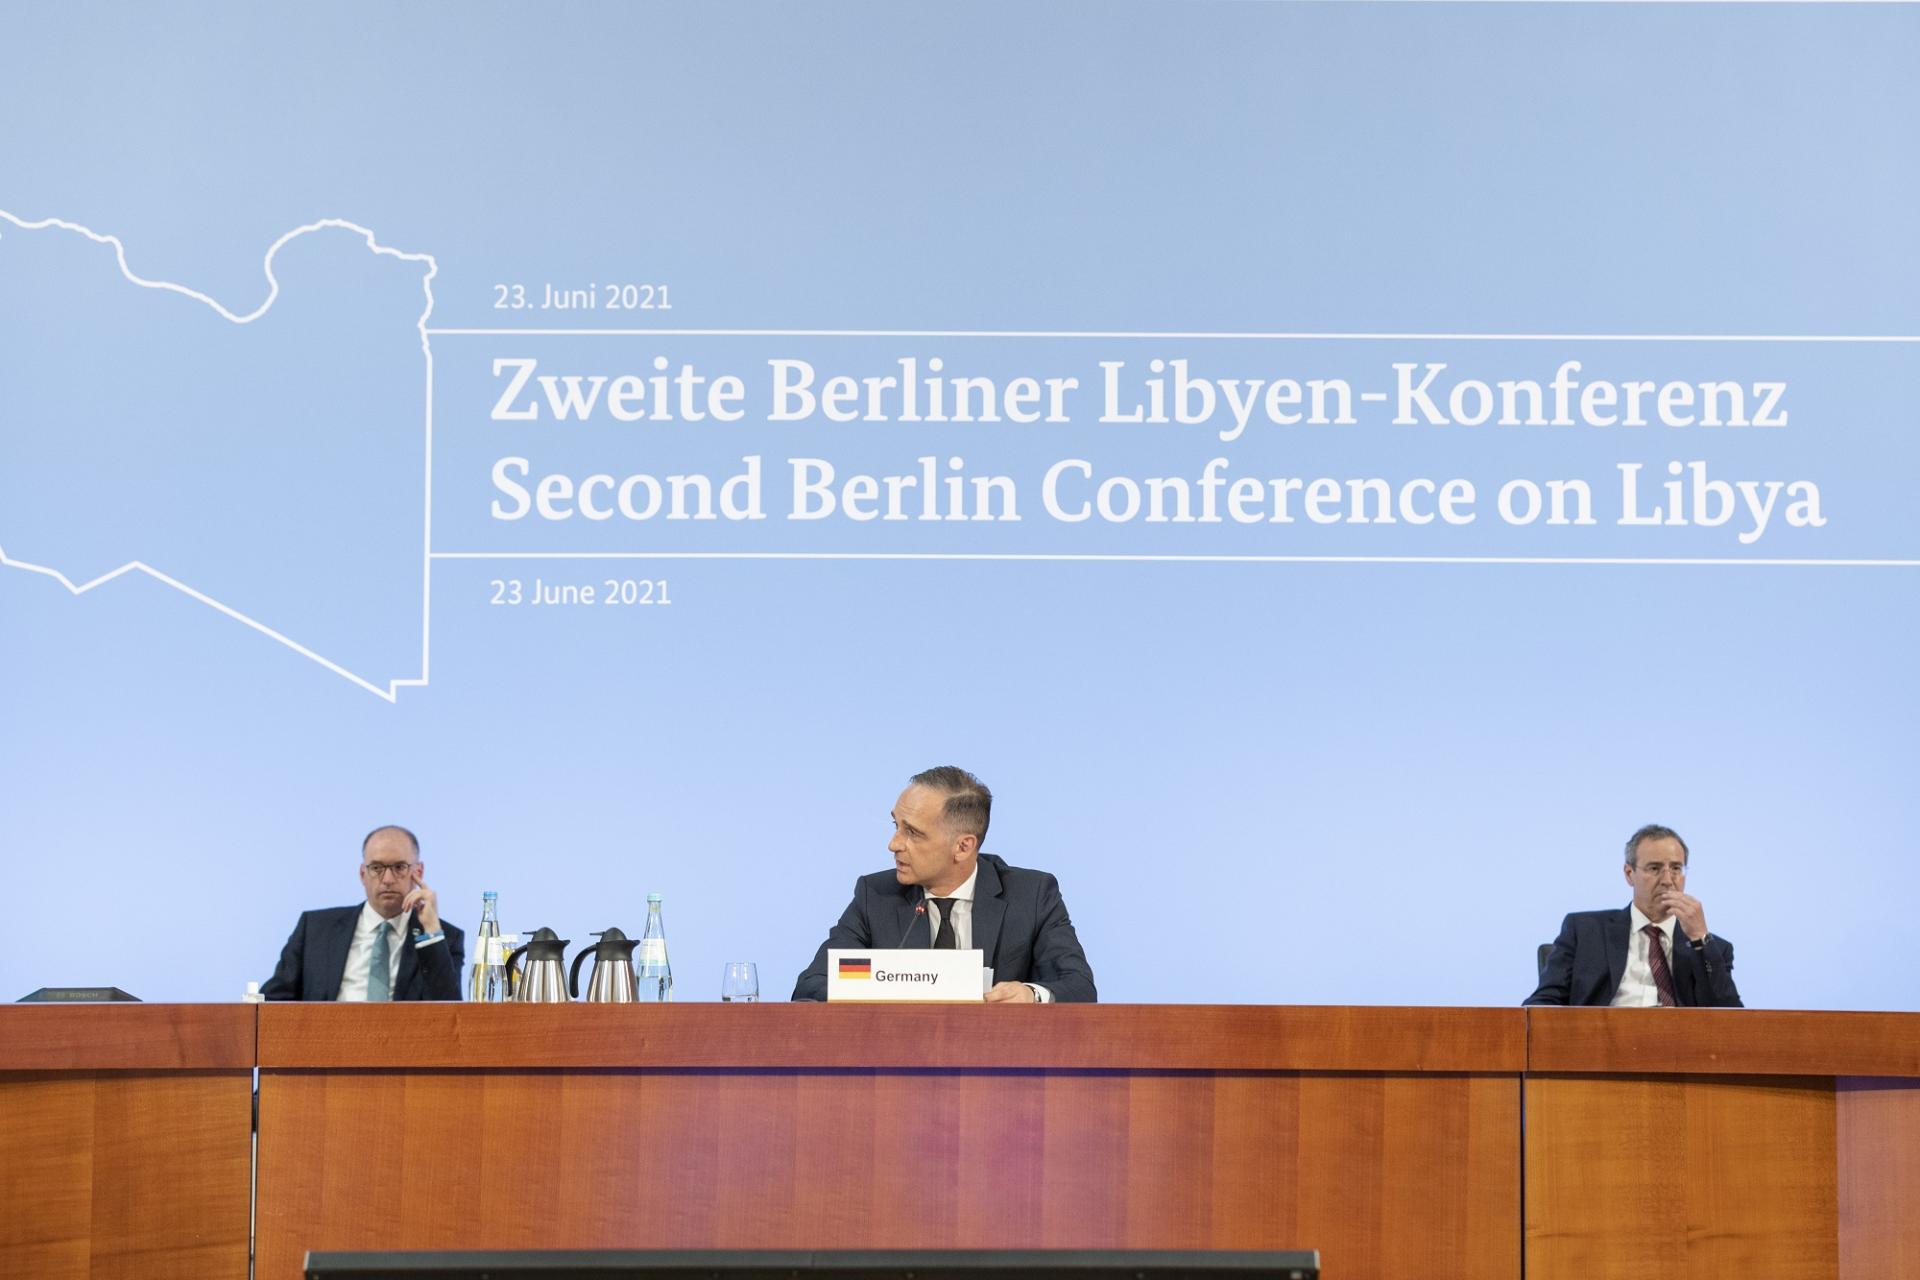 Završena Druga berlinska konferencija o Libiji